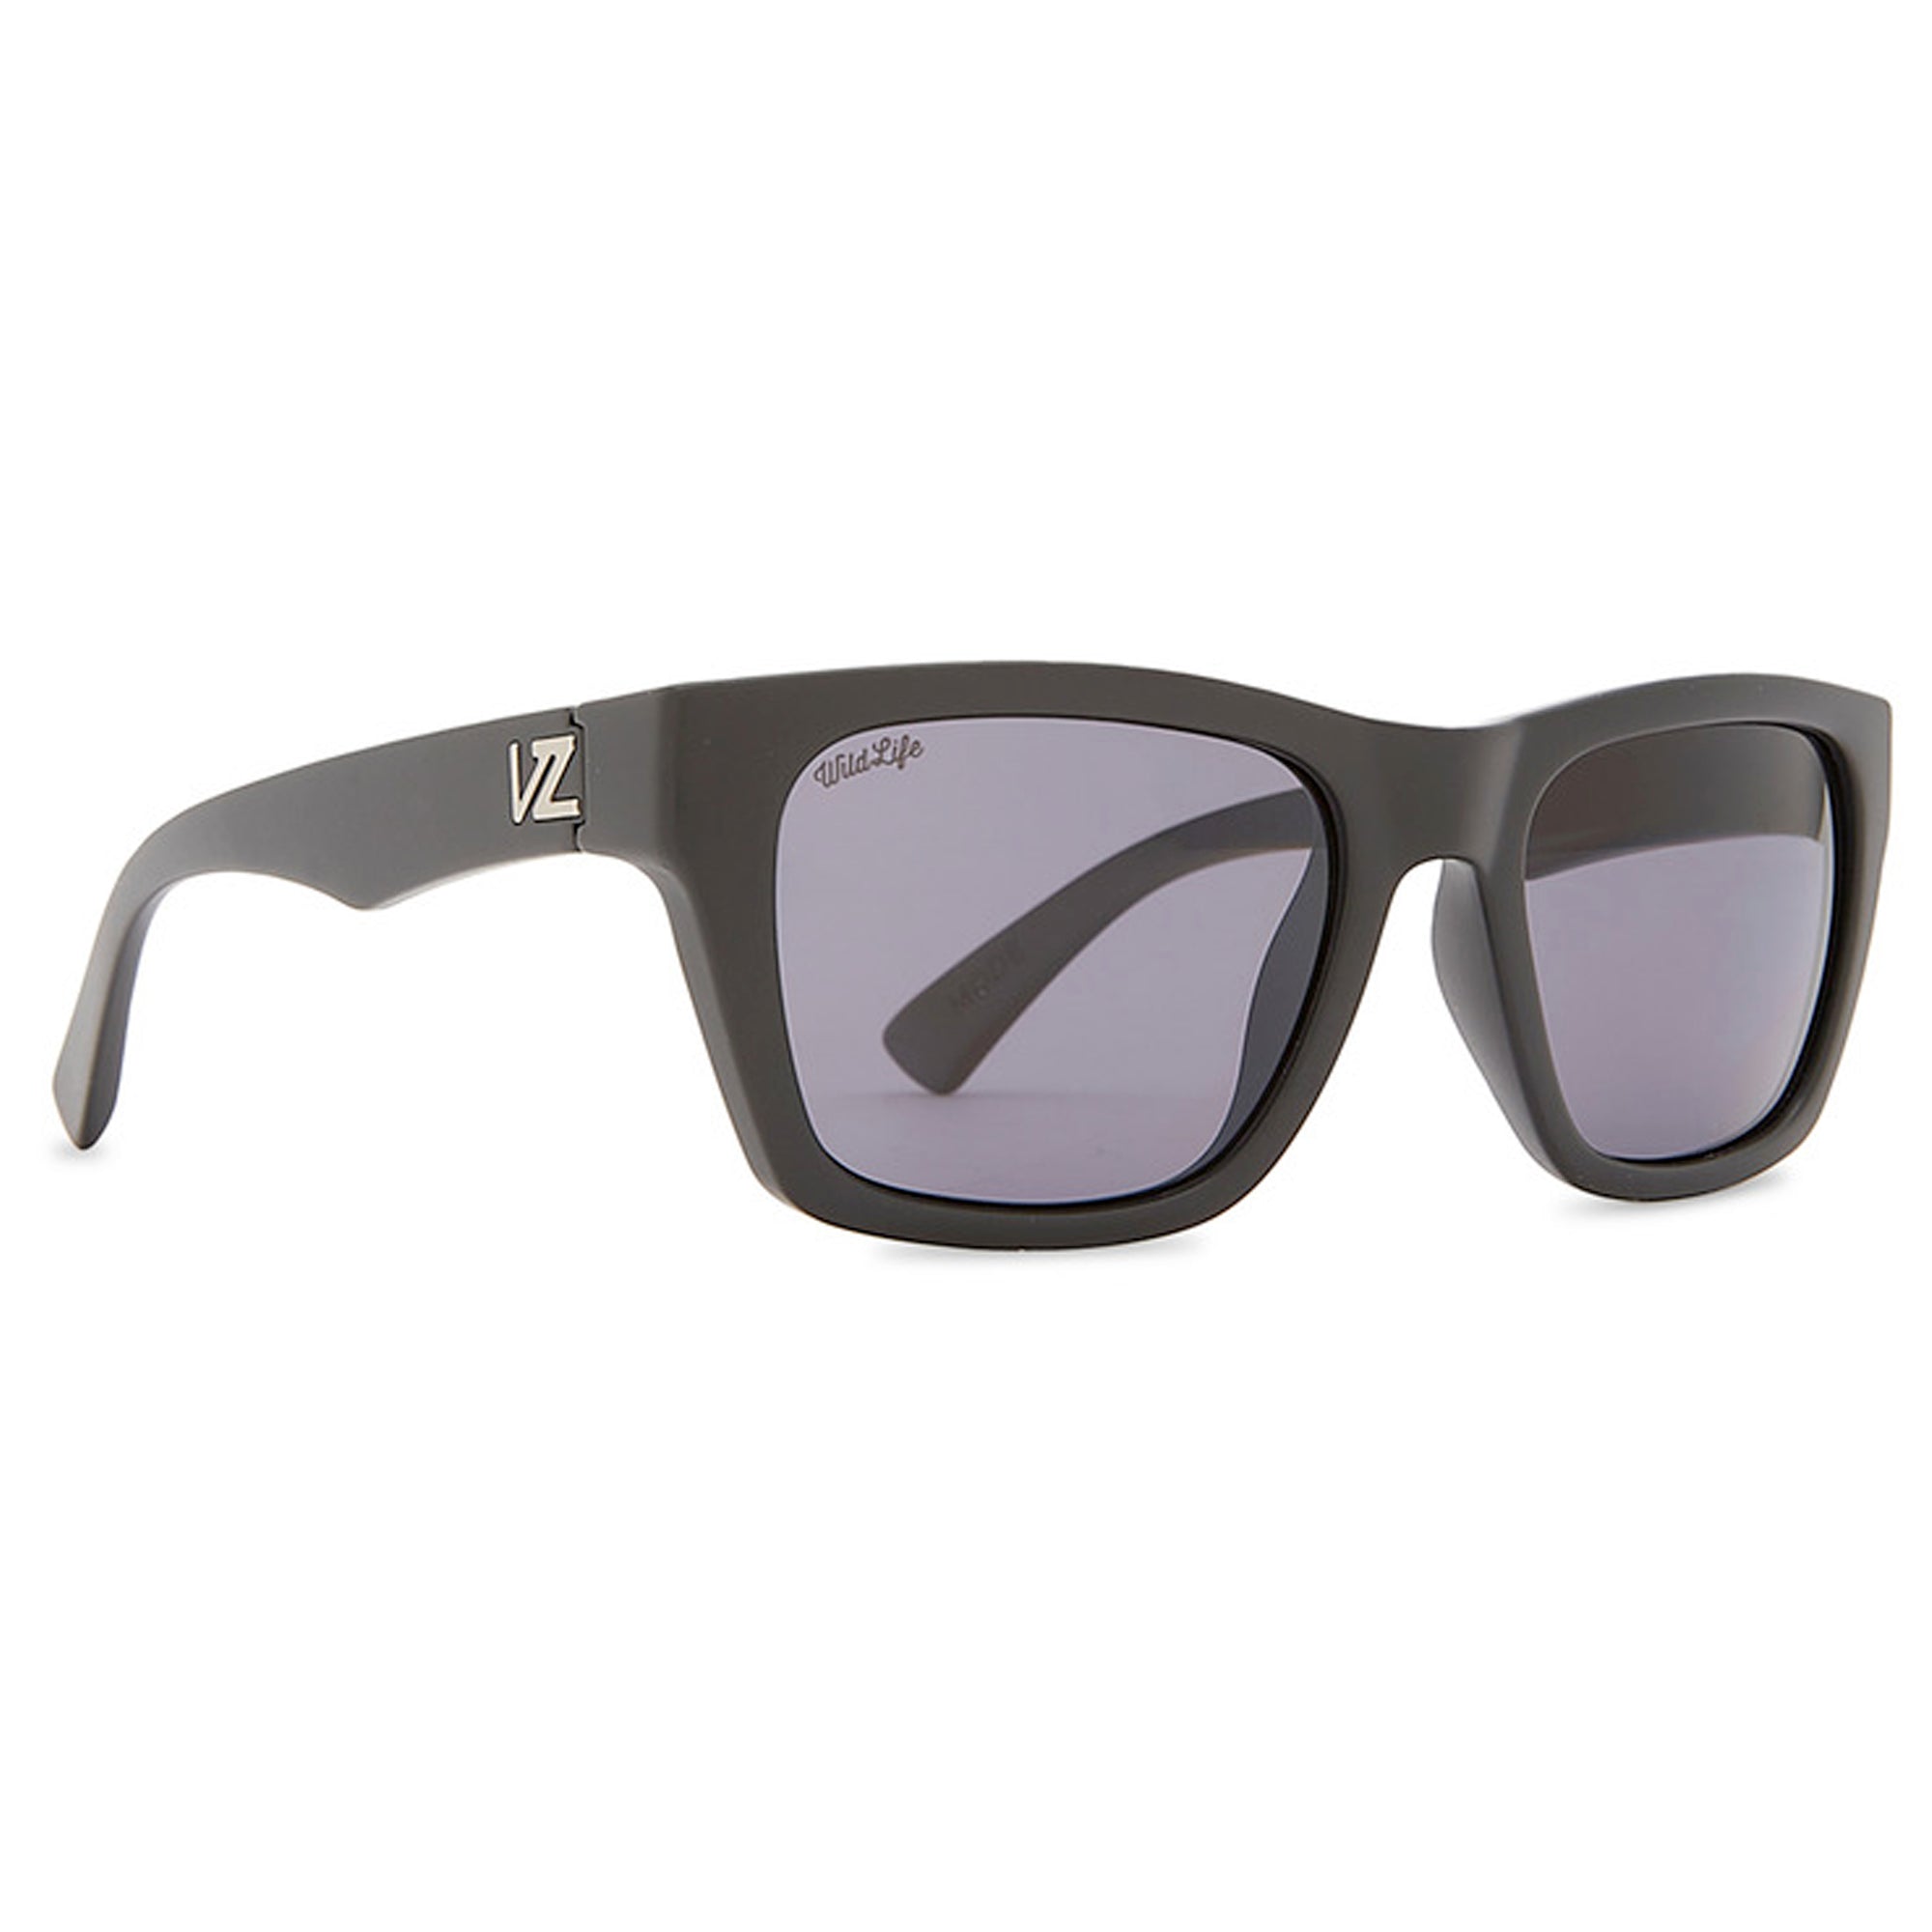 VonZipper Mode Men's Polarized Sunglasses